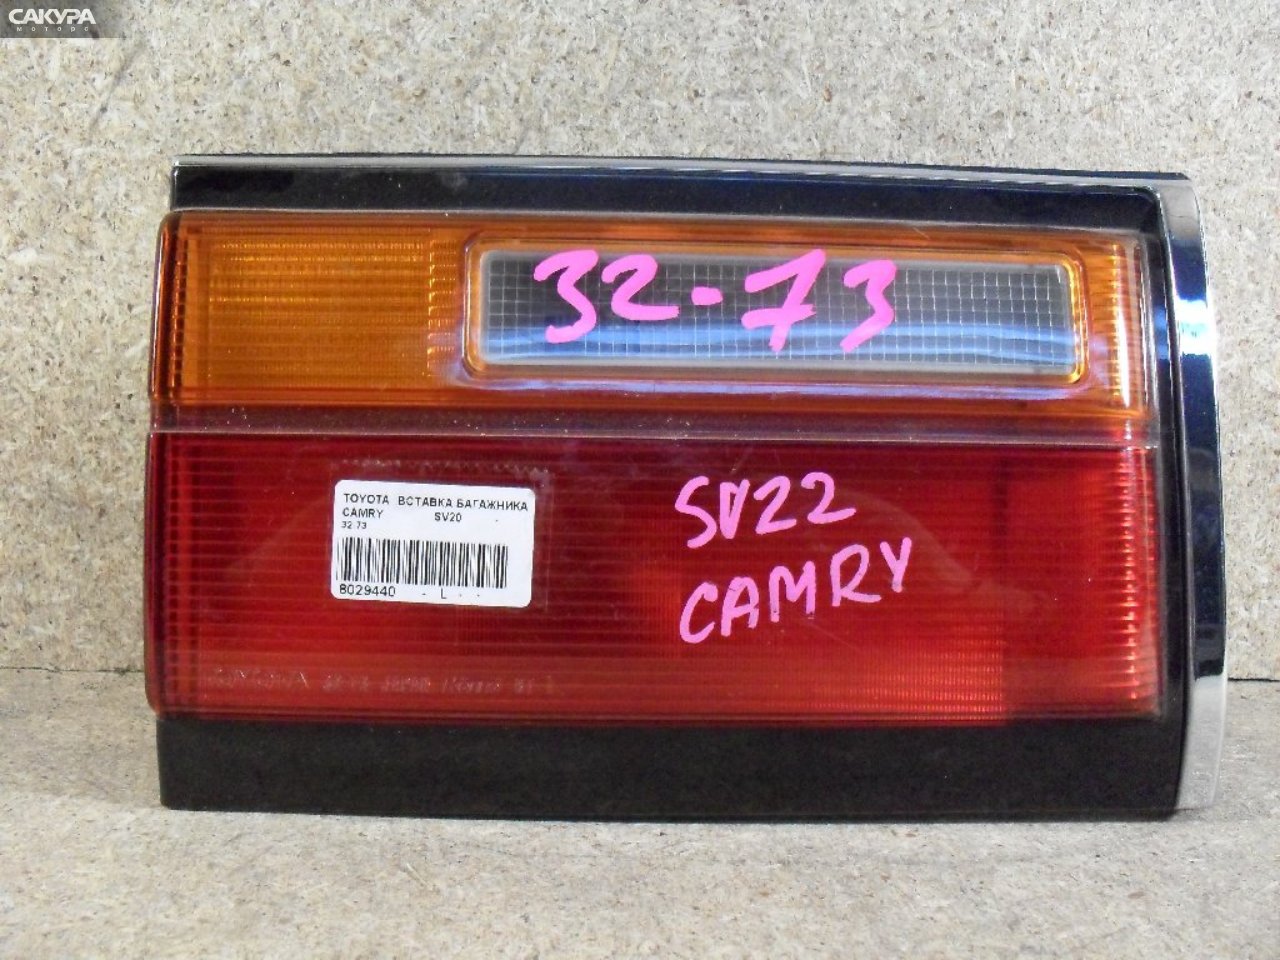 Фонарь вставка багажника левый Toyota Camry SV20 32-73: купить в Сакура Абакан.